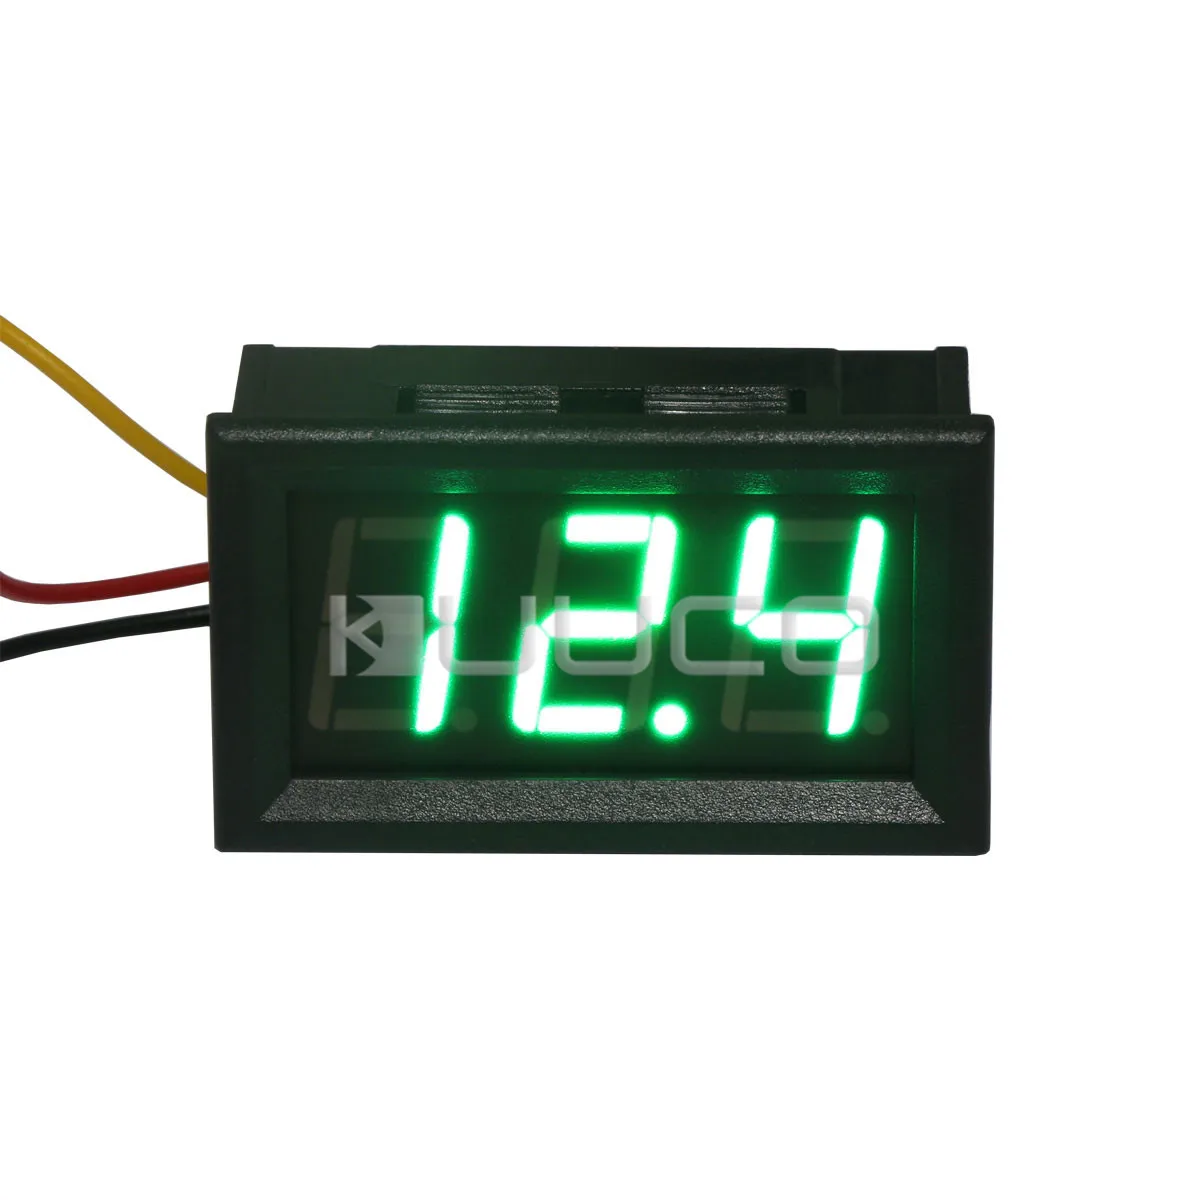 12V Digital Red/ Blue/ Green LED Display Voltage Meter Voltmeter Panel For Car 